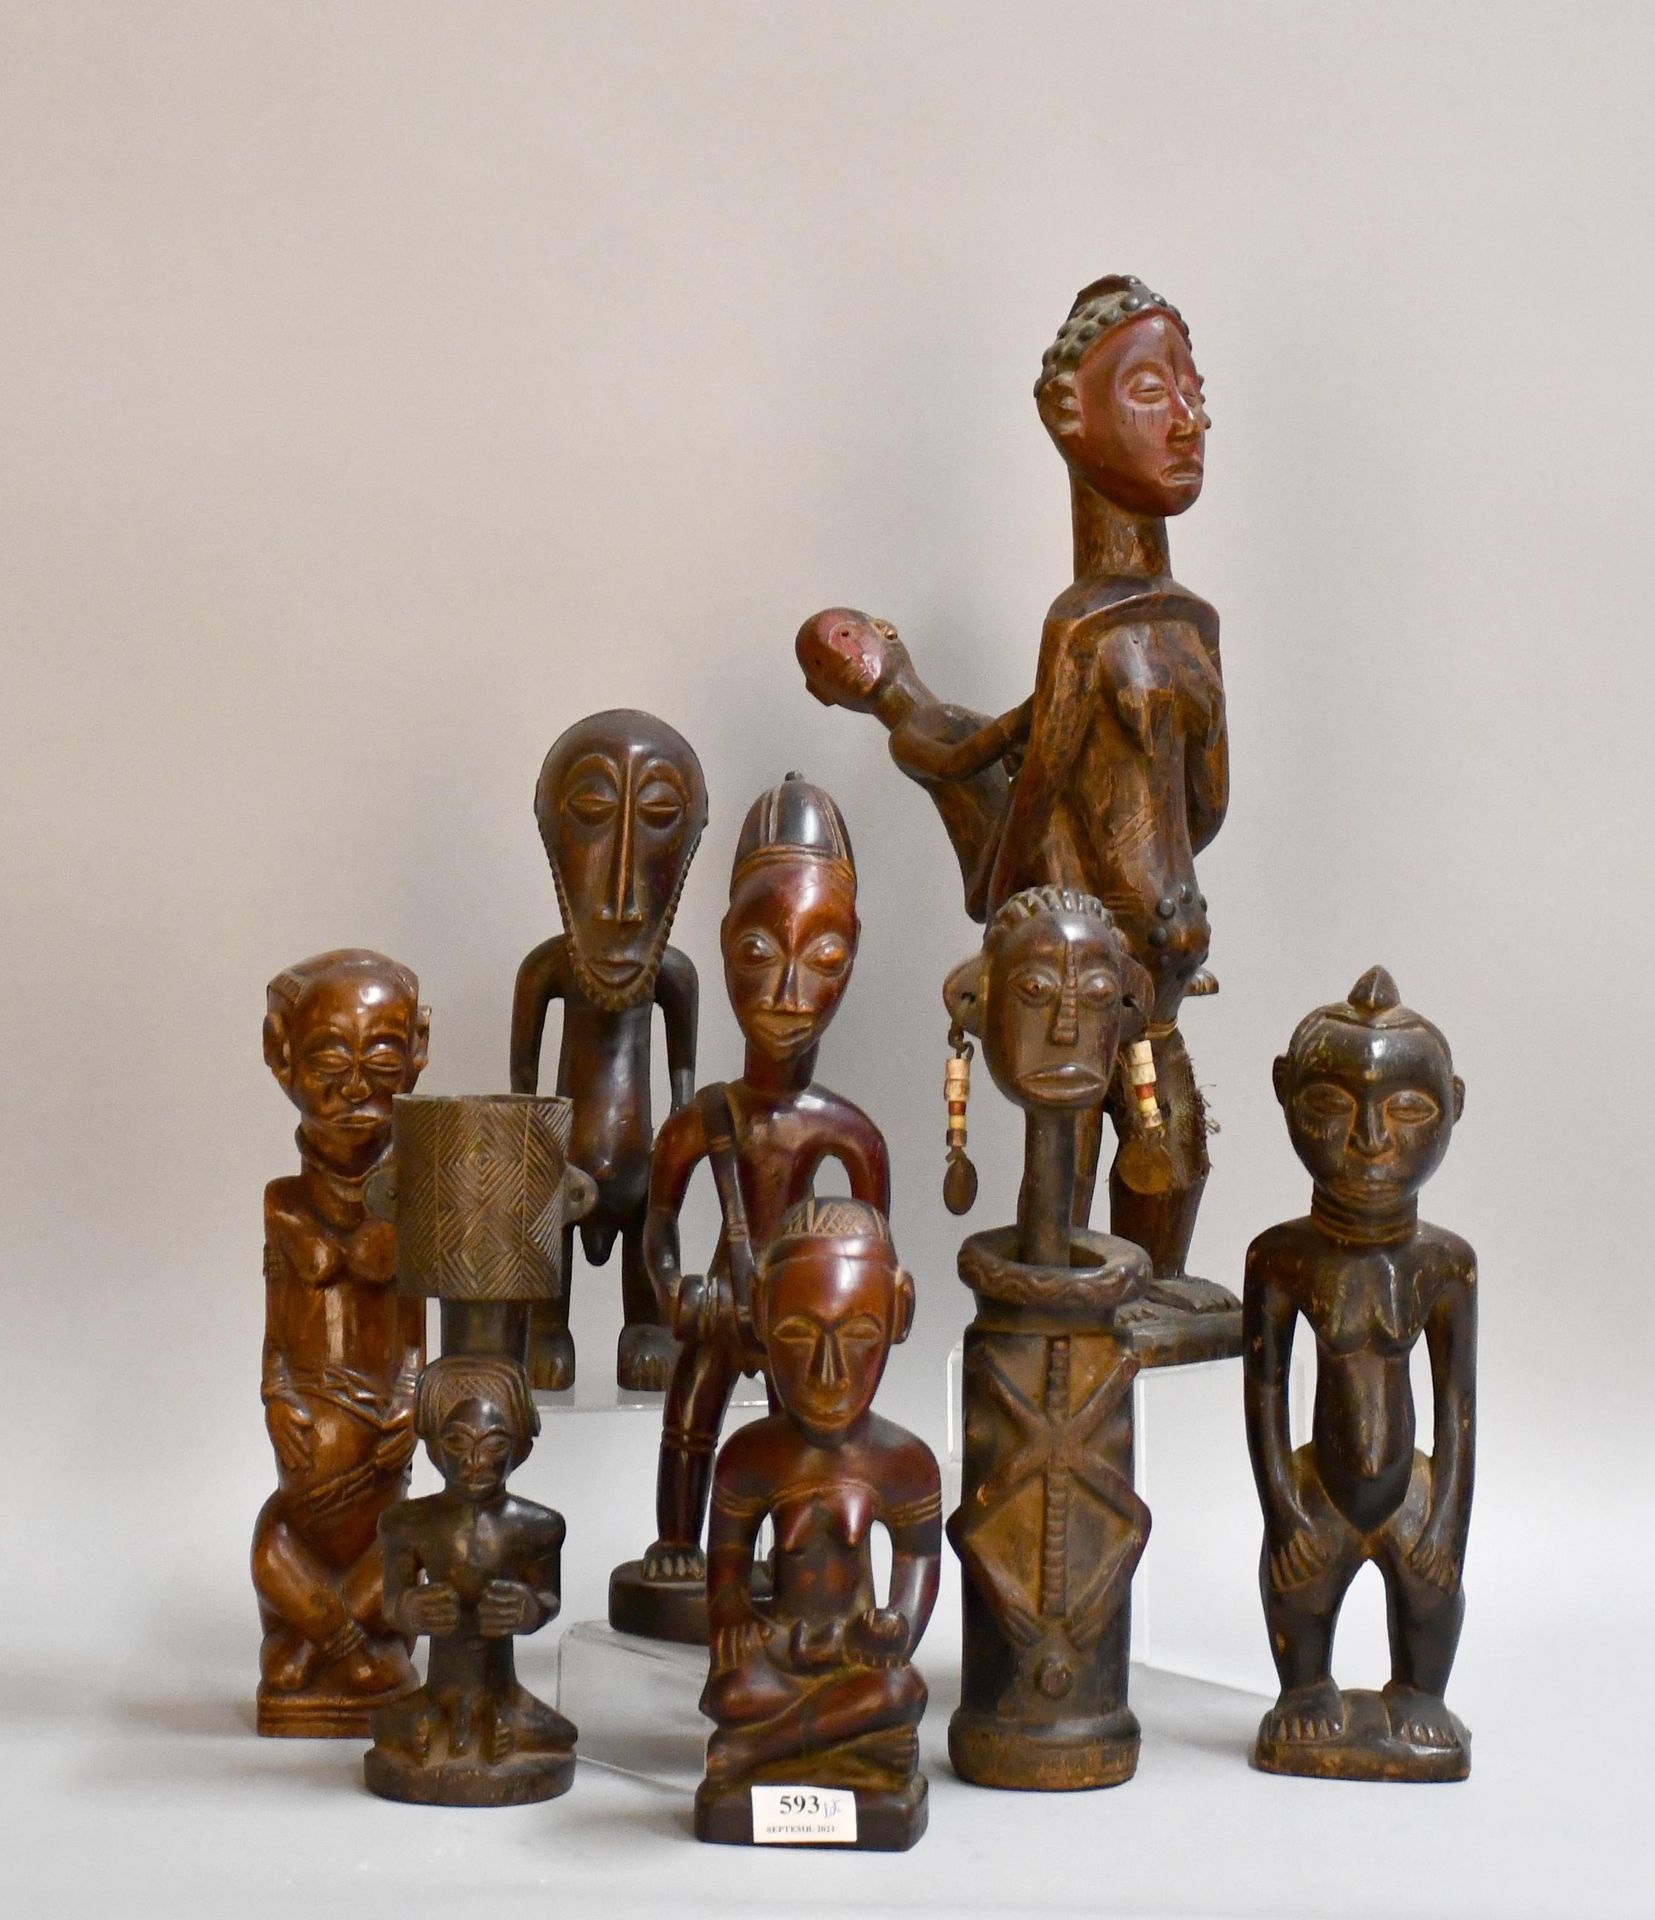 Null Africana

Lotto di feticci africani in legno intagliato.